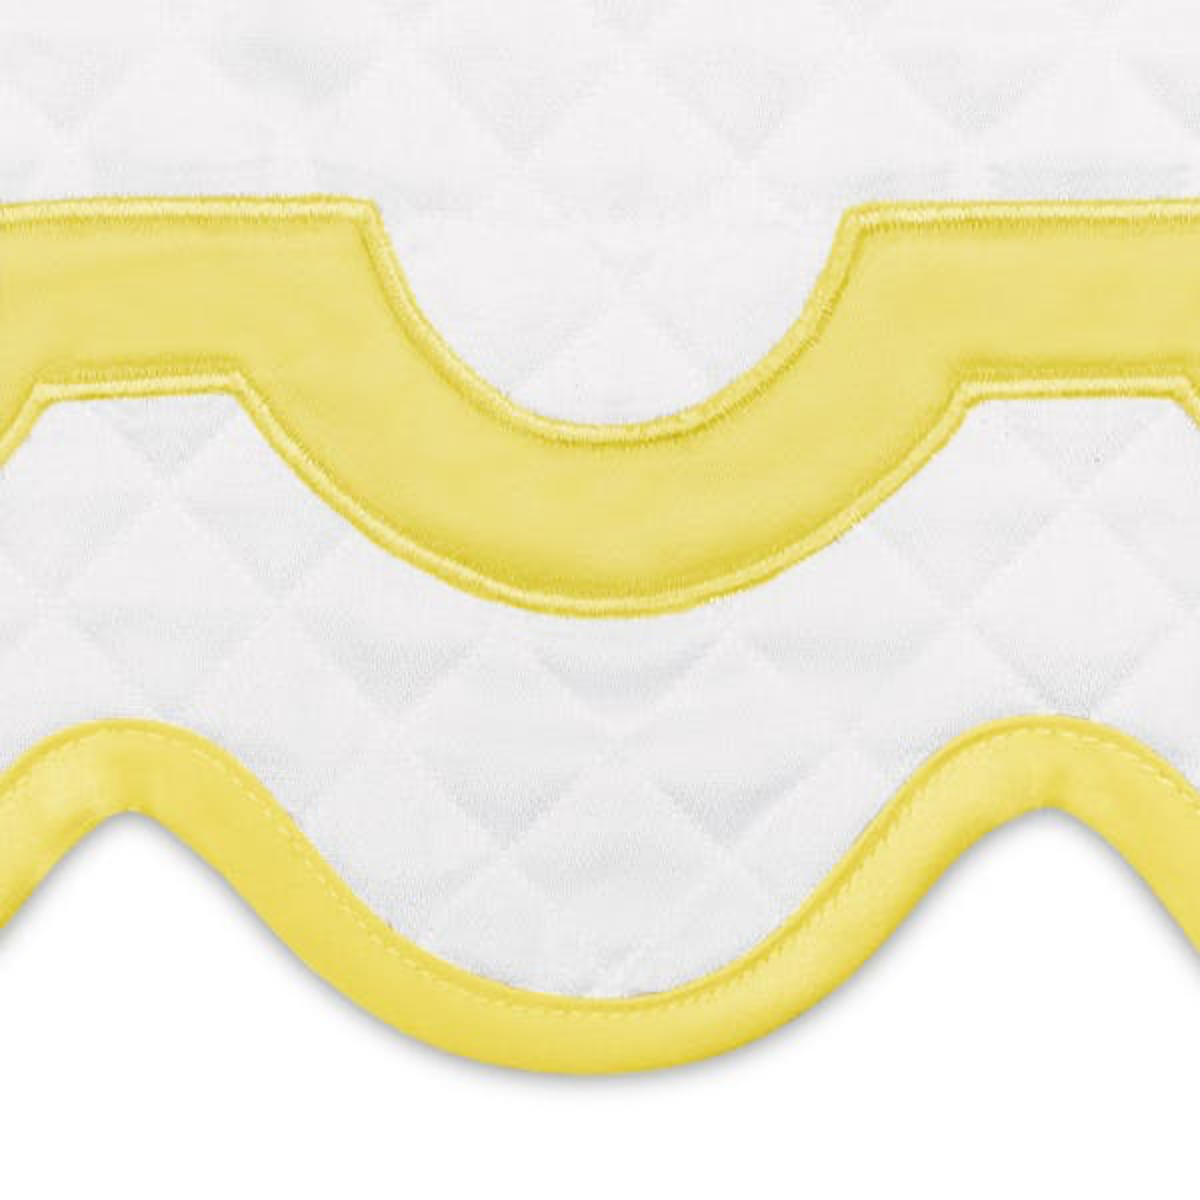 Swatch Sample of Matouk Mirasol Matelassé Bedding in Lemon Color